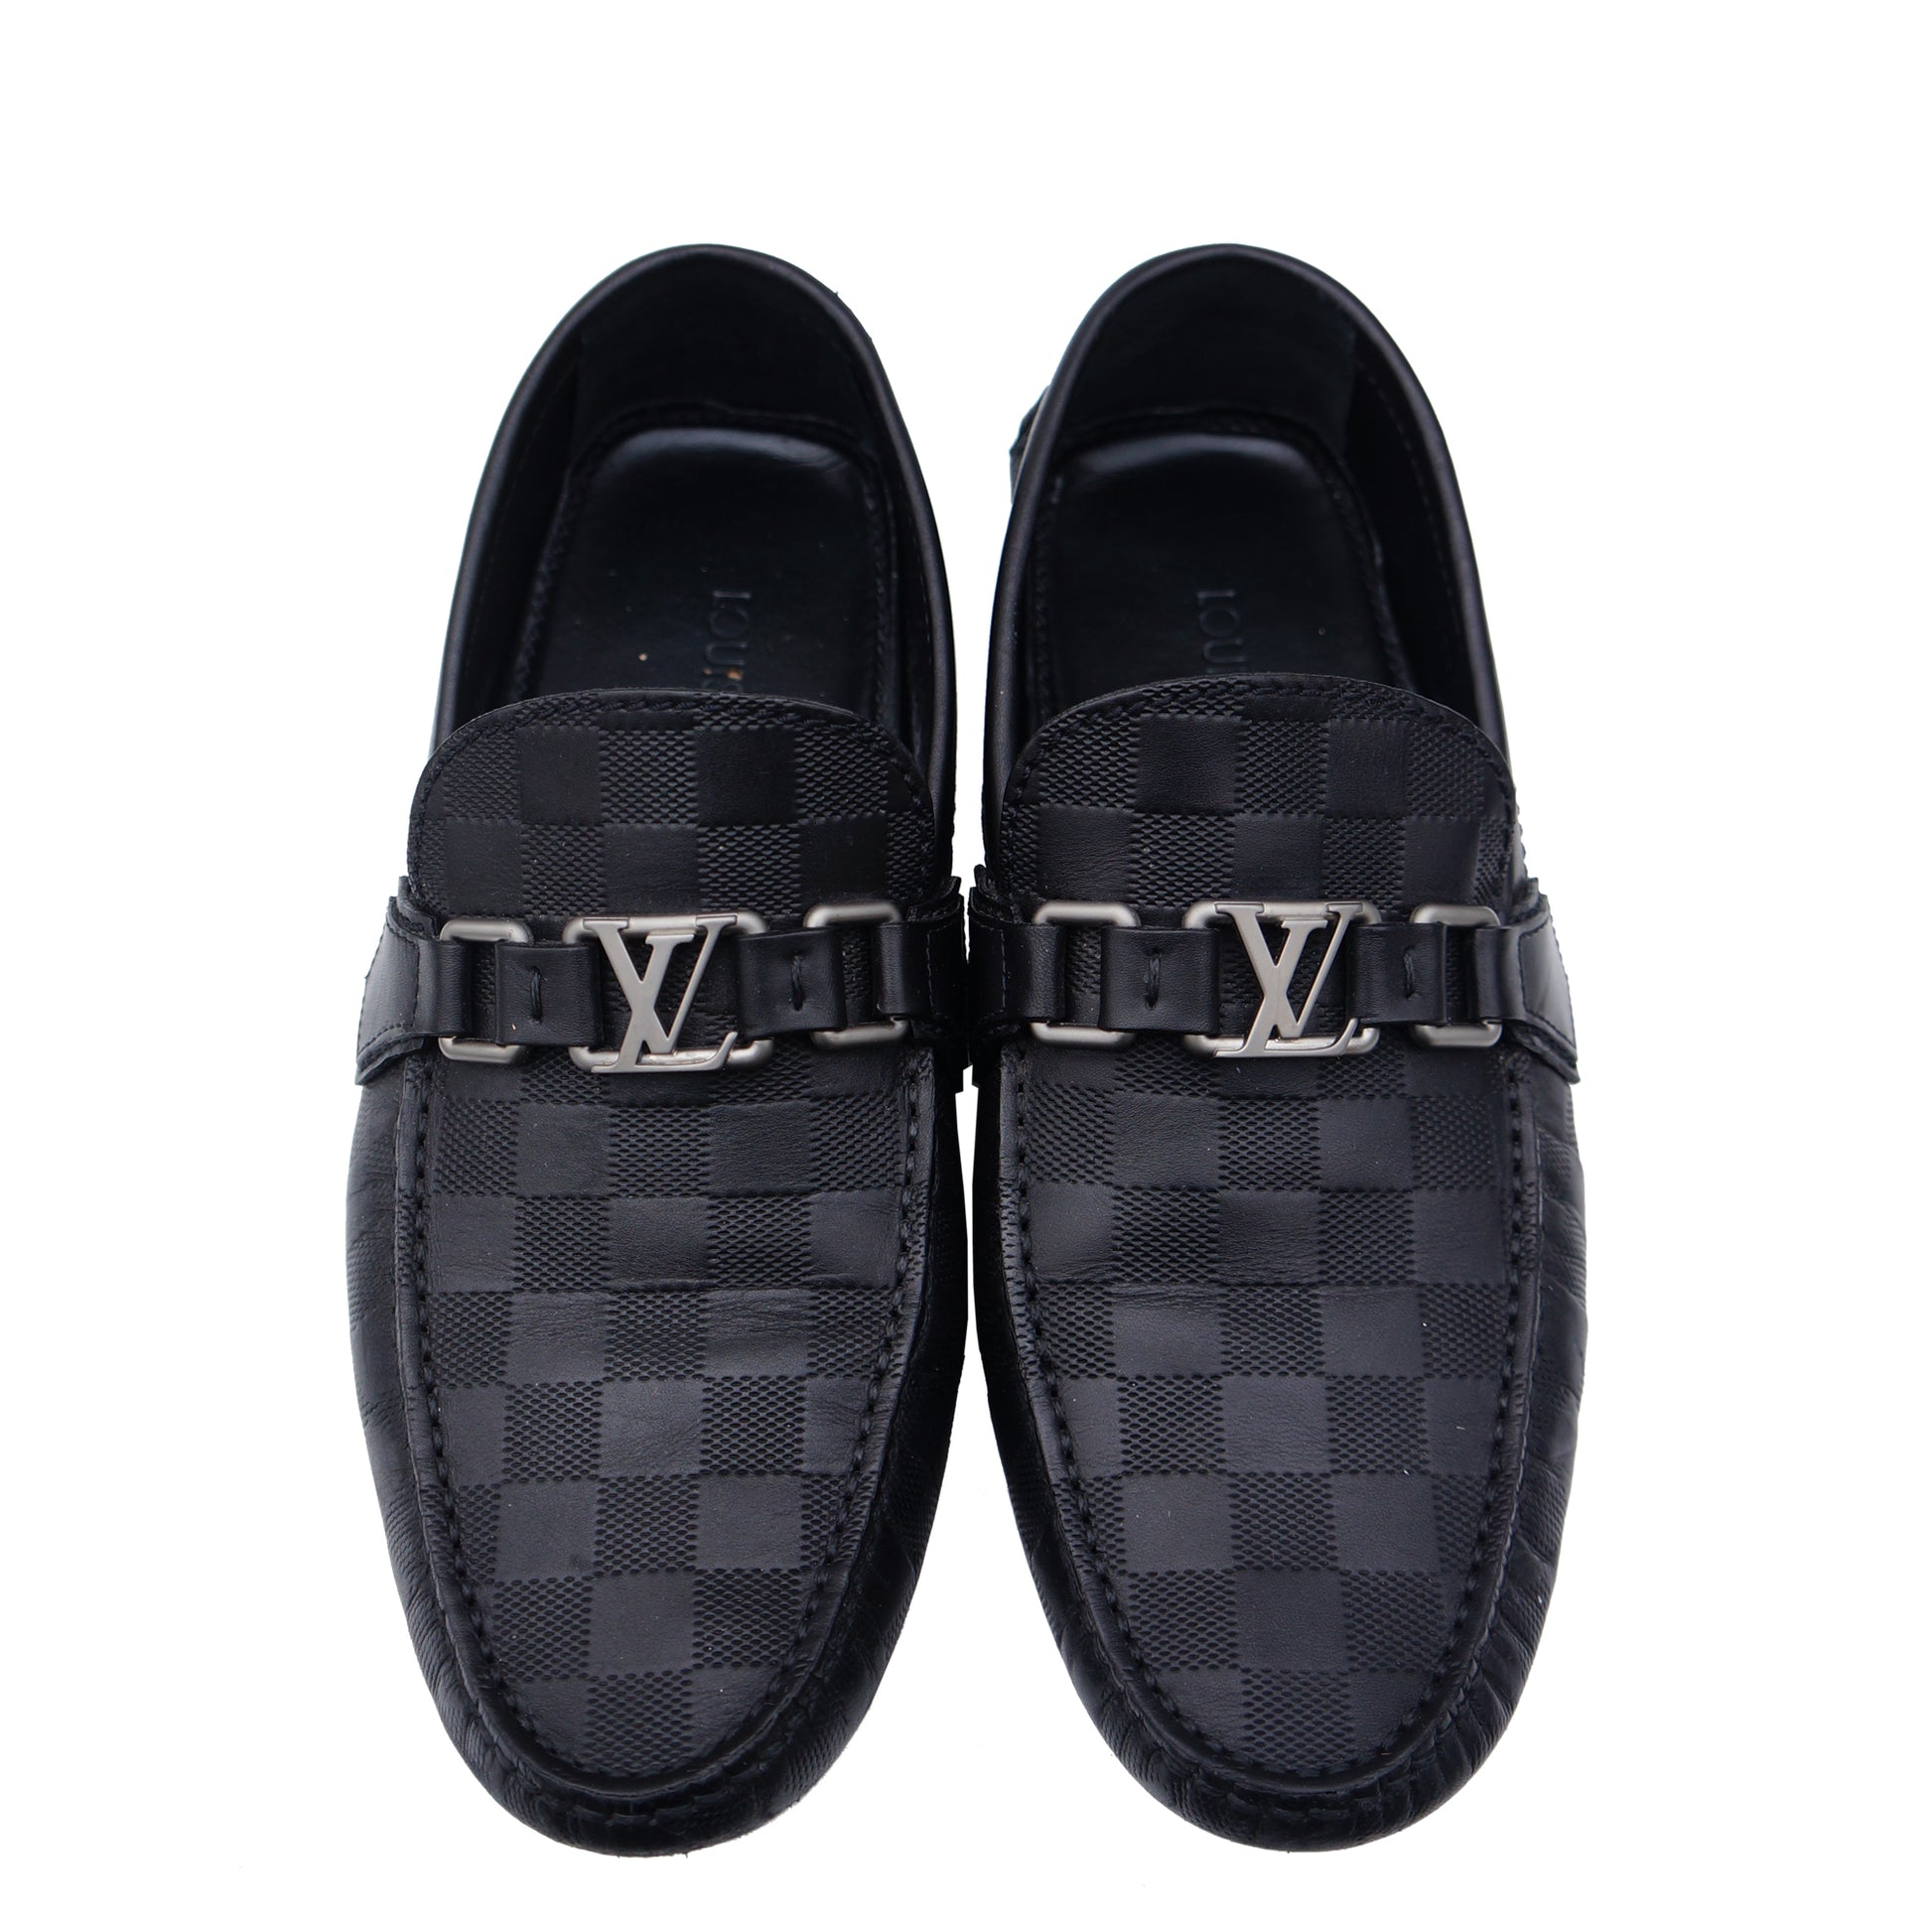 Louis Vuitton - Hockenheim Moccasin - Graphite - Men - Size: 08 - Luxury